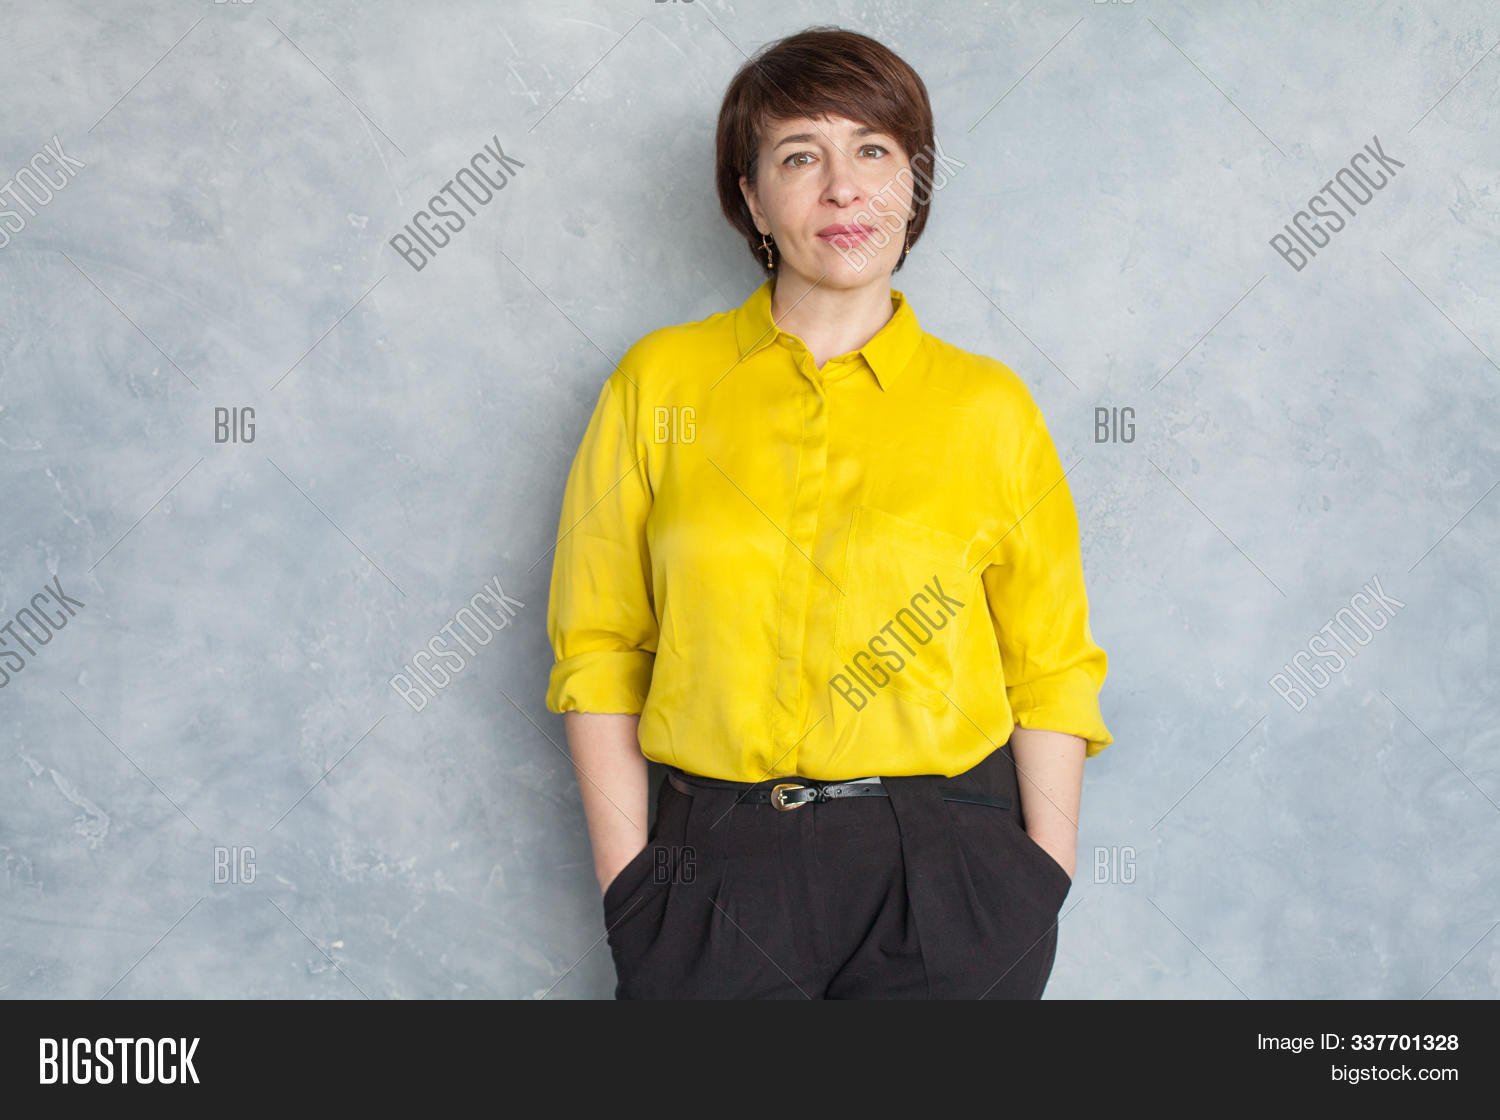 Желтая рубашка на женщине профиль